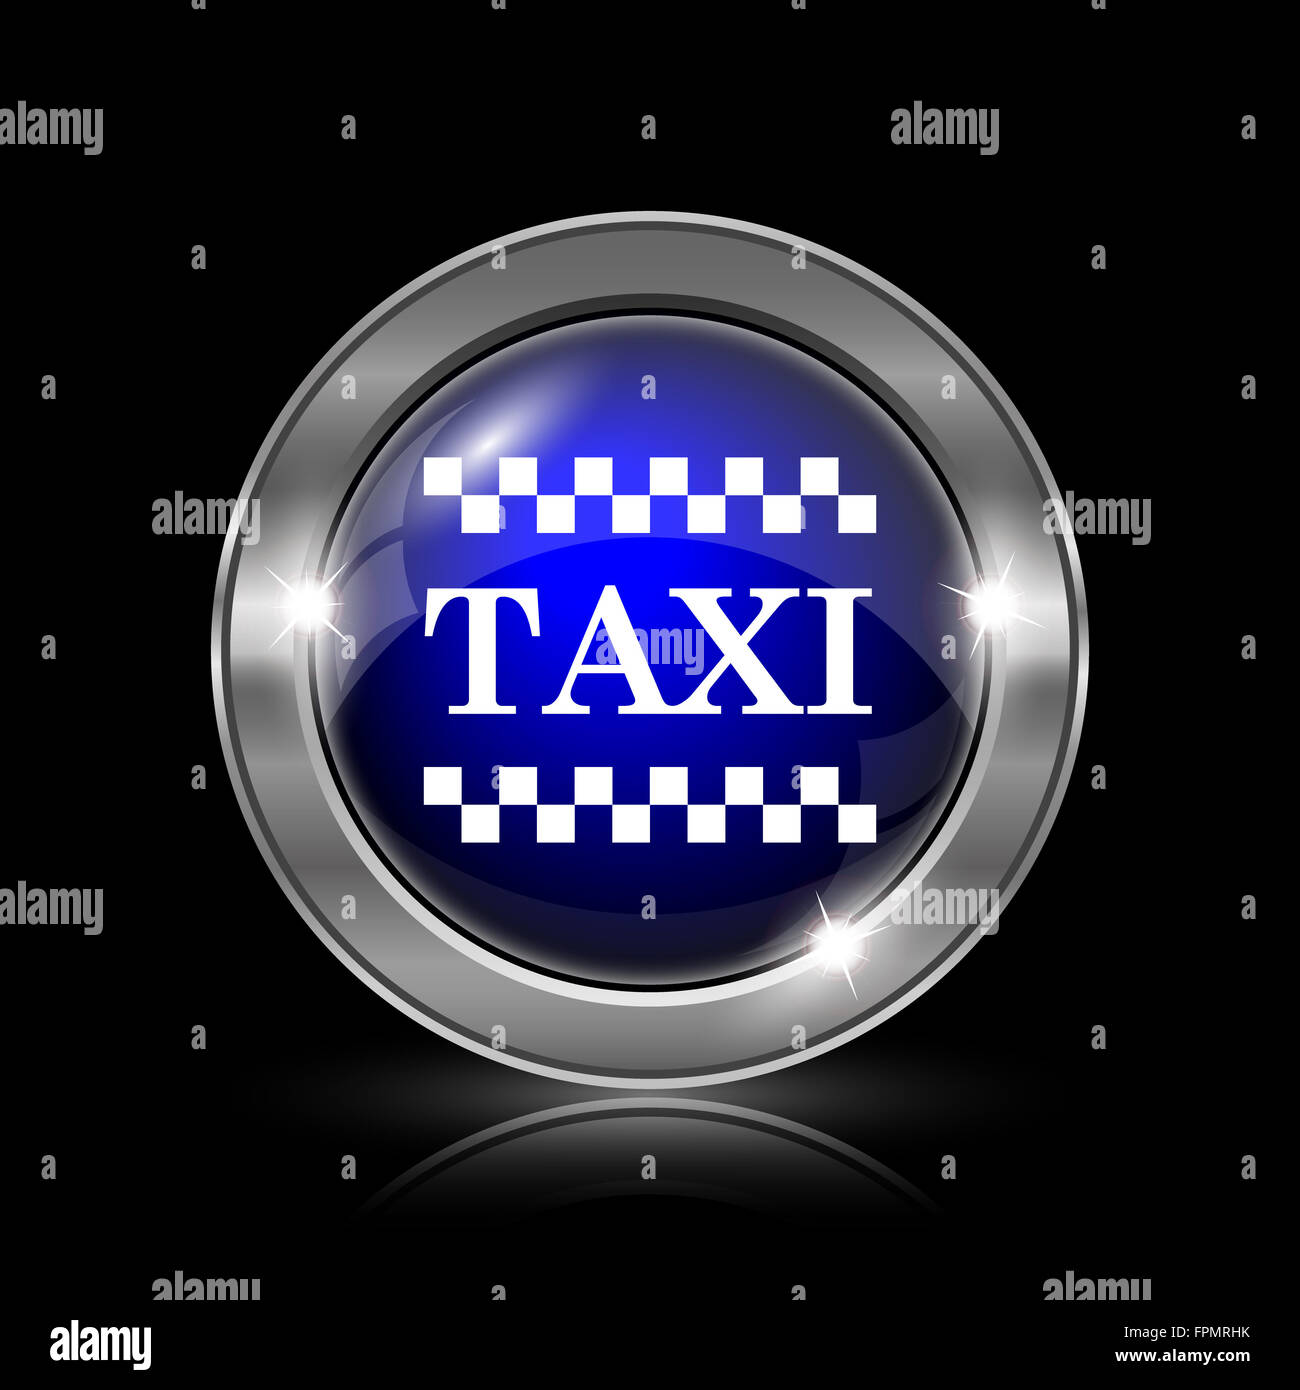 Taxi icon. Metallic internet button on black background. Stock Photo